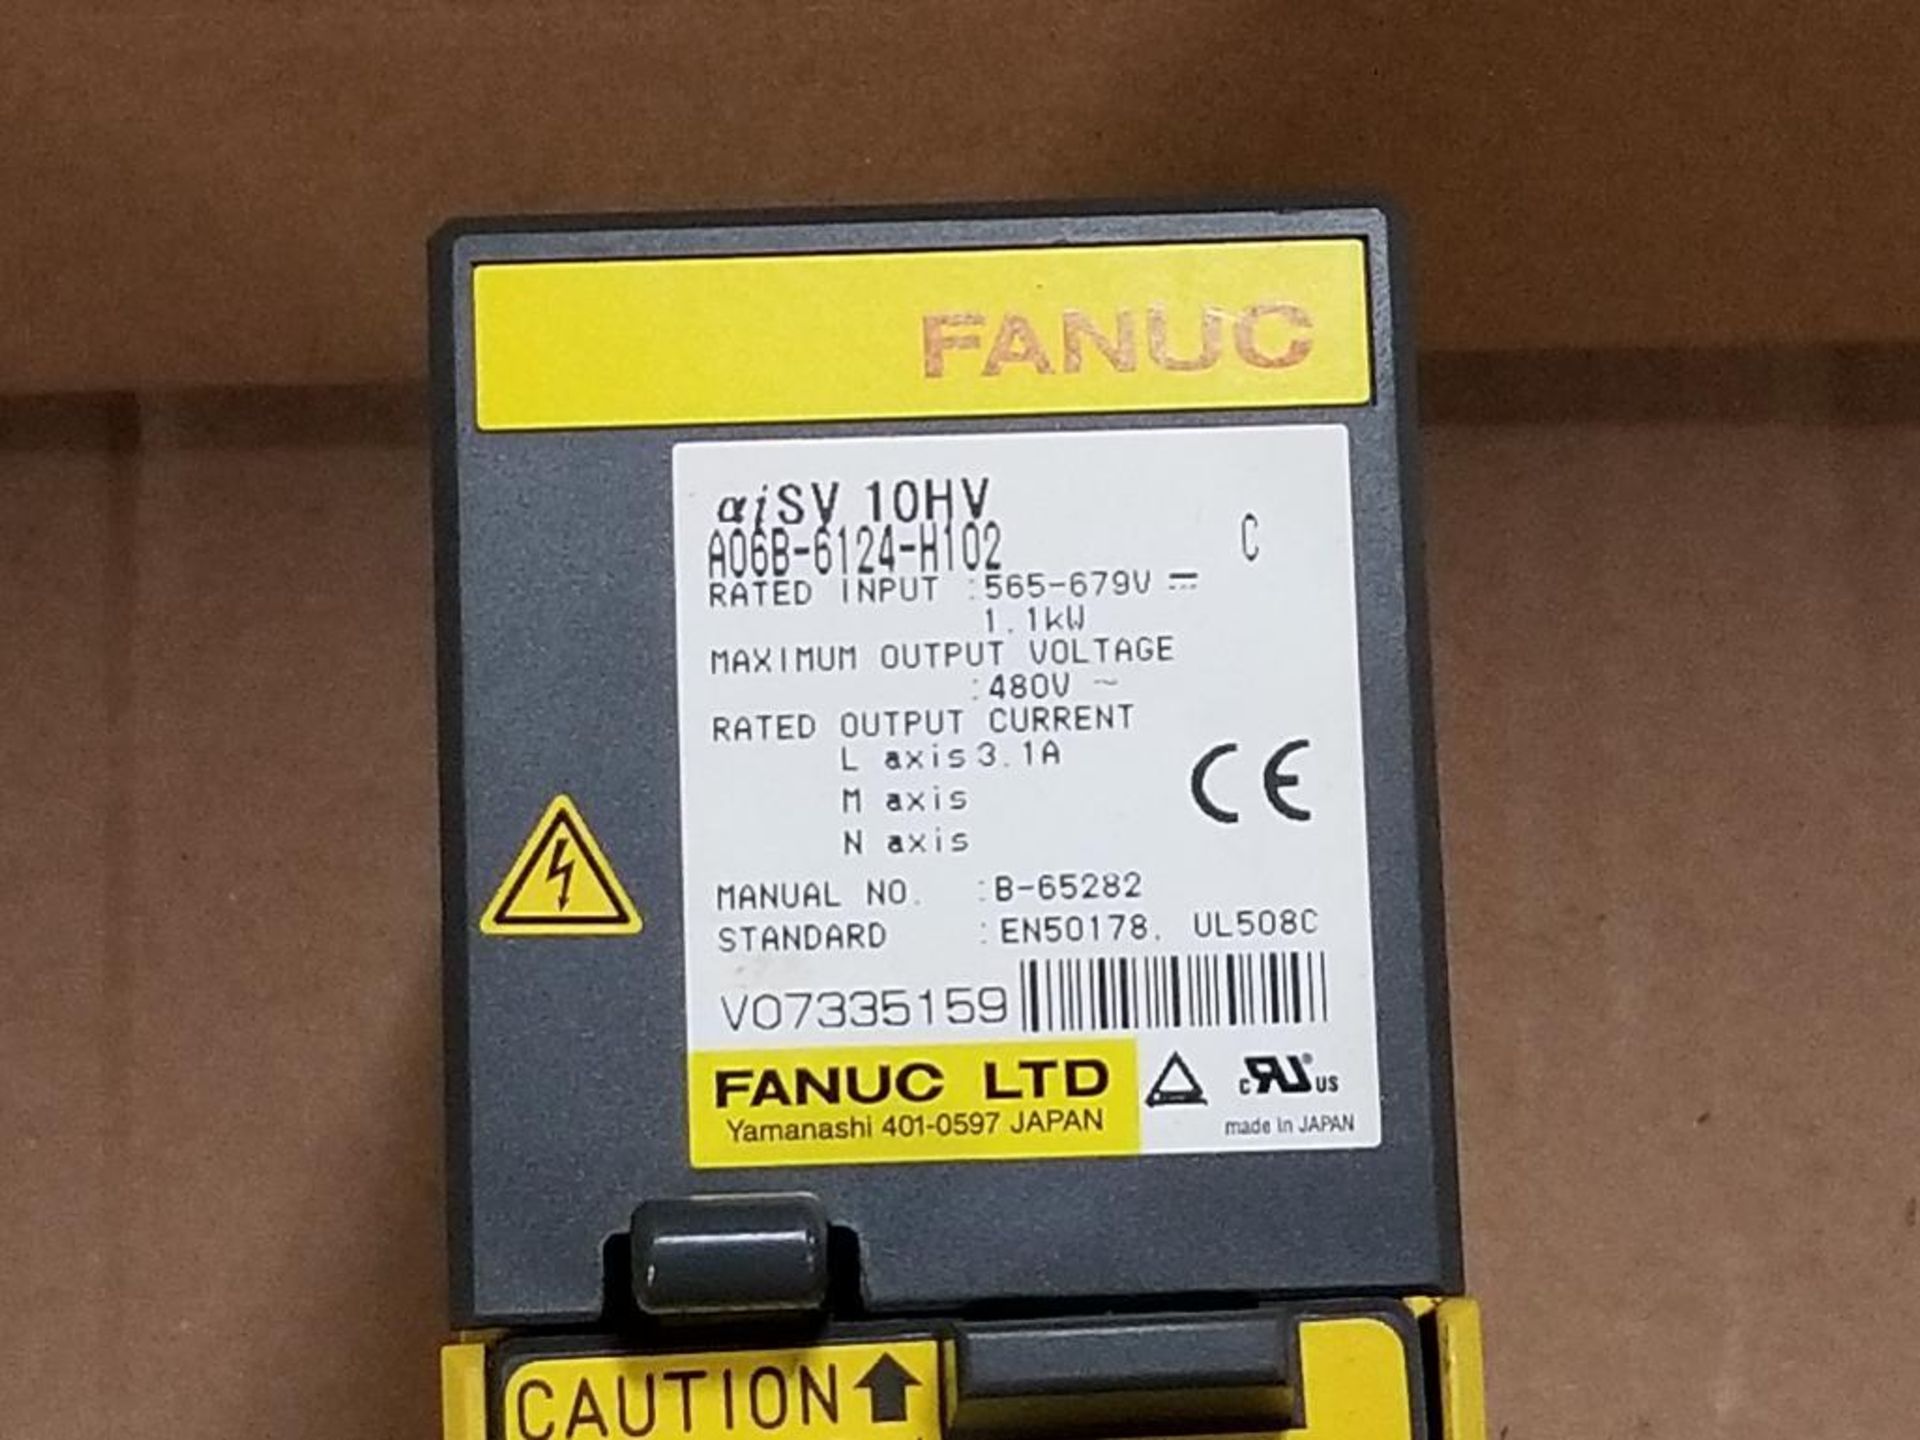 Fanuc A06B-6124-H102 aiSV 10HV. 1.1kW. - Image 5 of 6